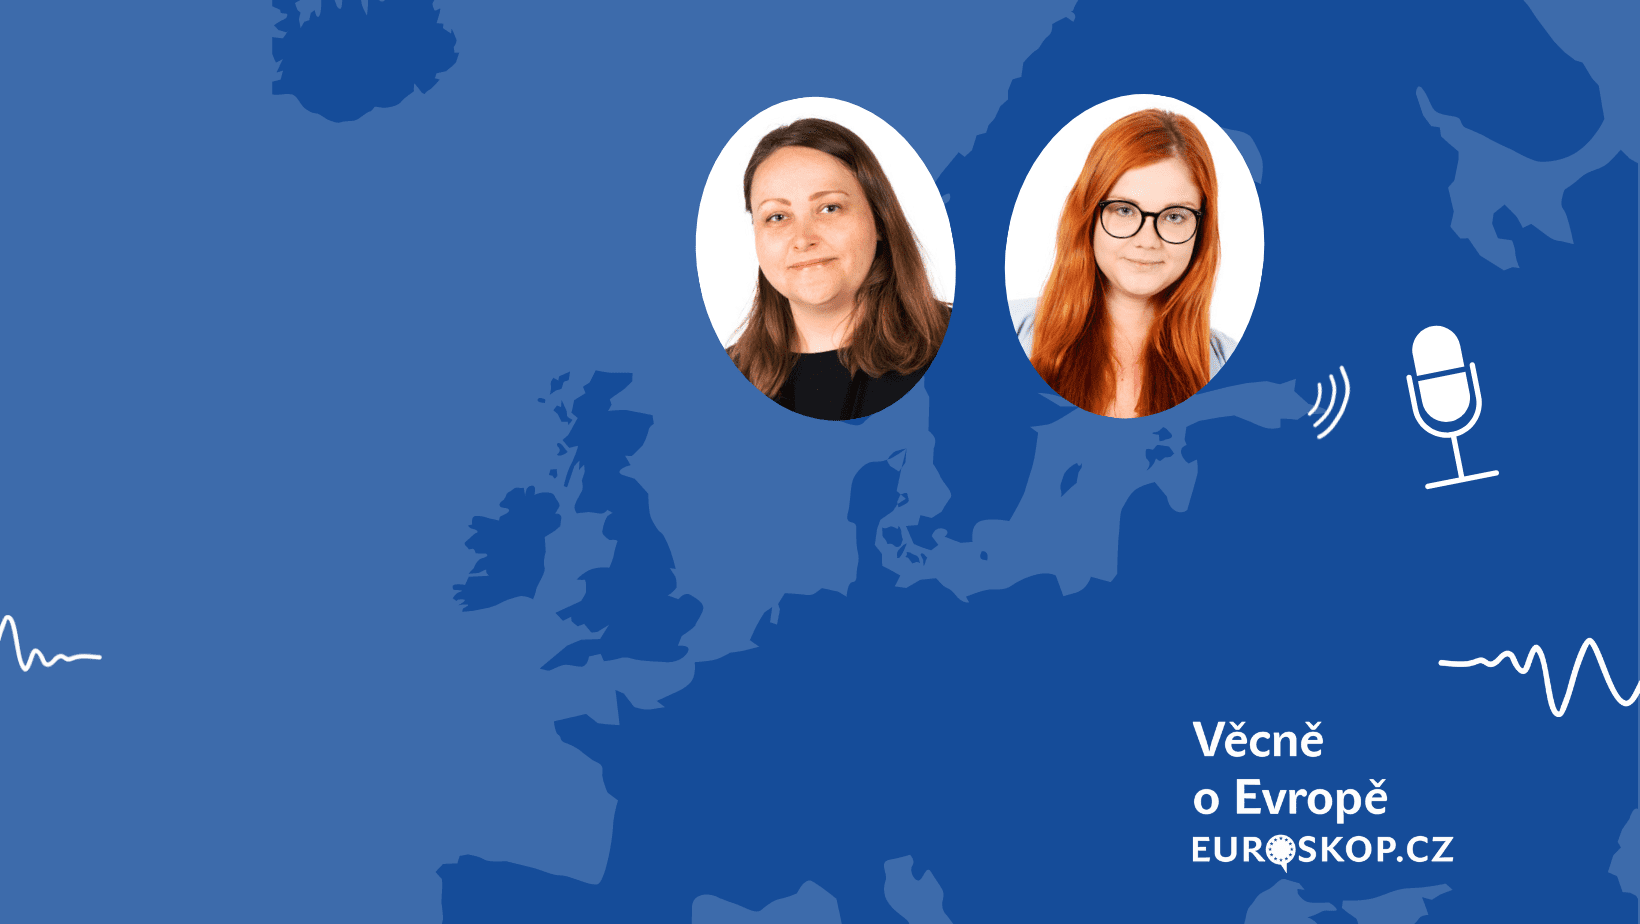 Přečtete si více ze článku Věcně o Evropě: Alice Krutilová a Eva Húsková o zákulisí českého předsednictví